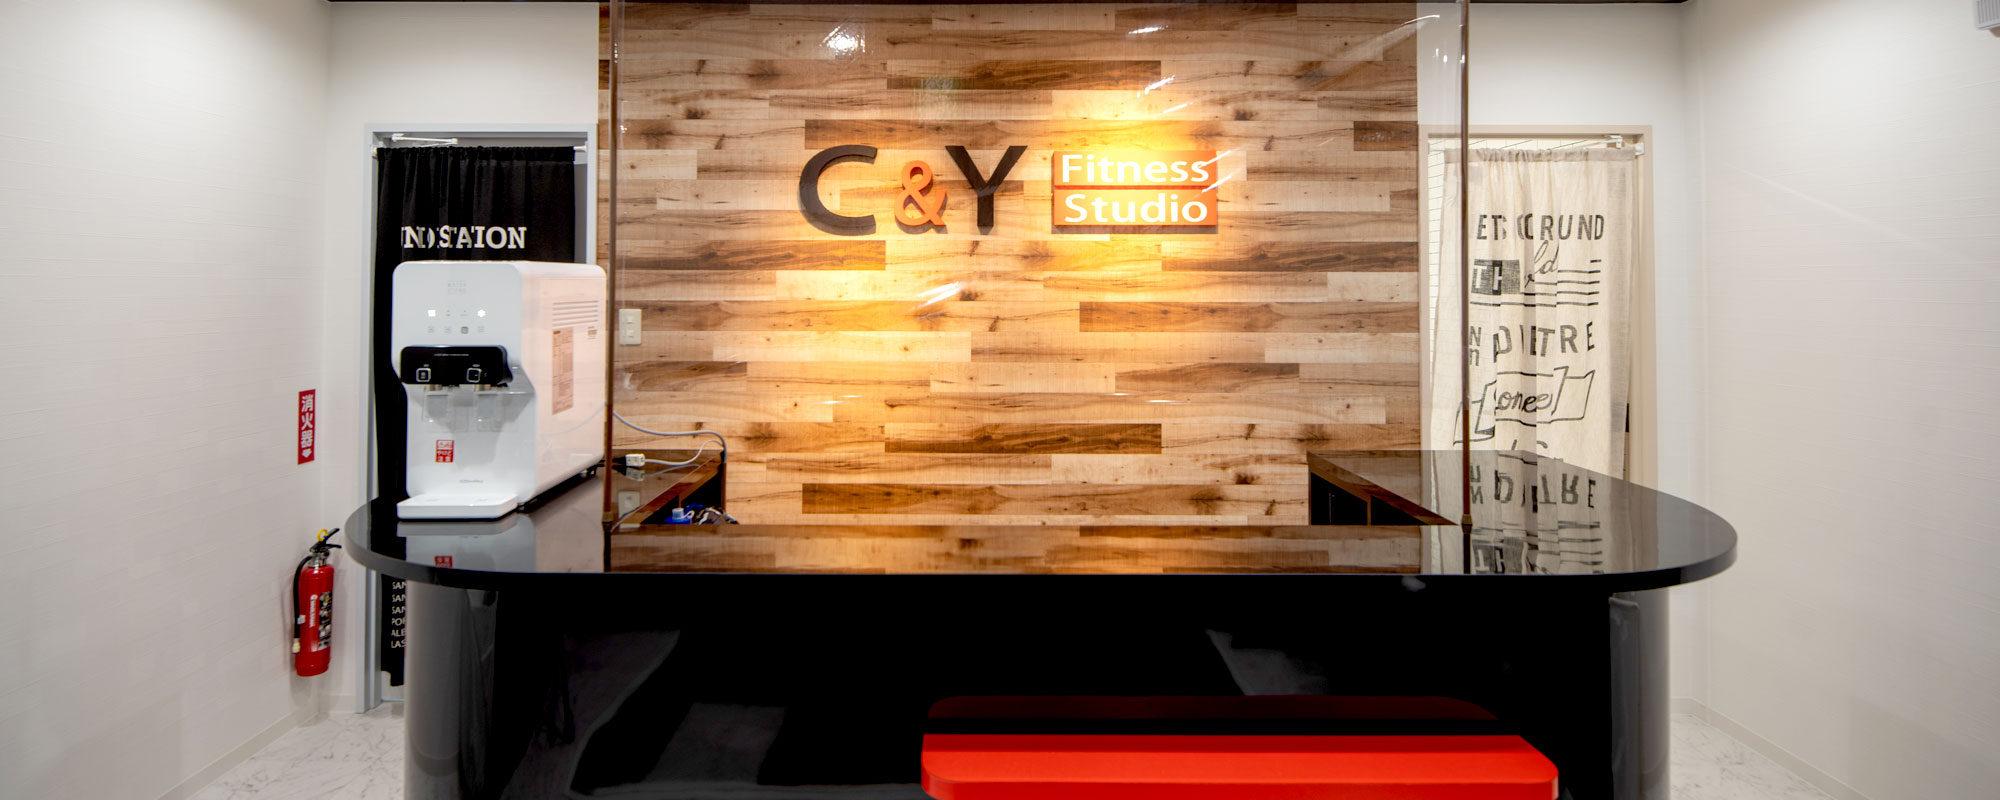 C&Y Fitness Studio